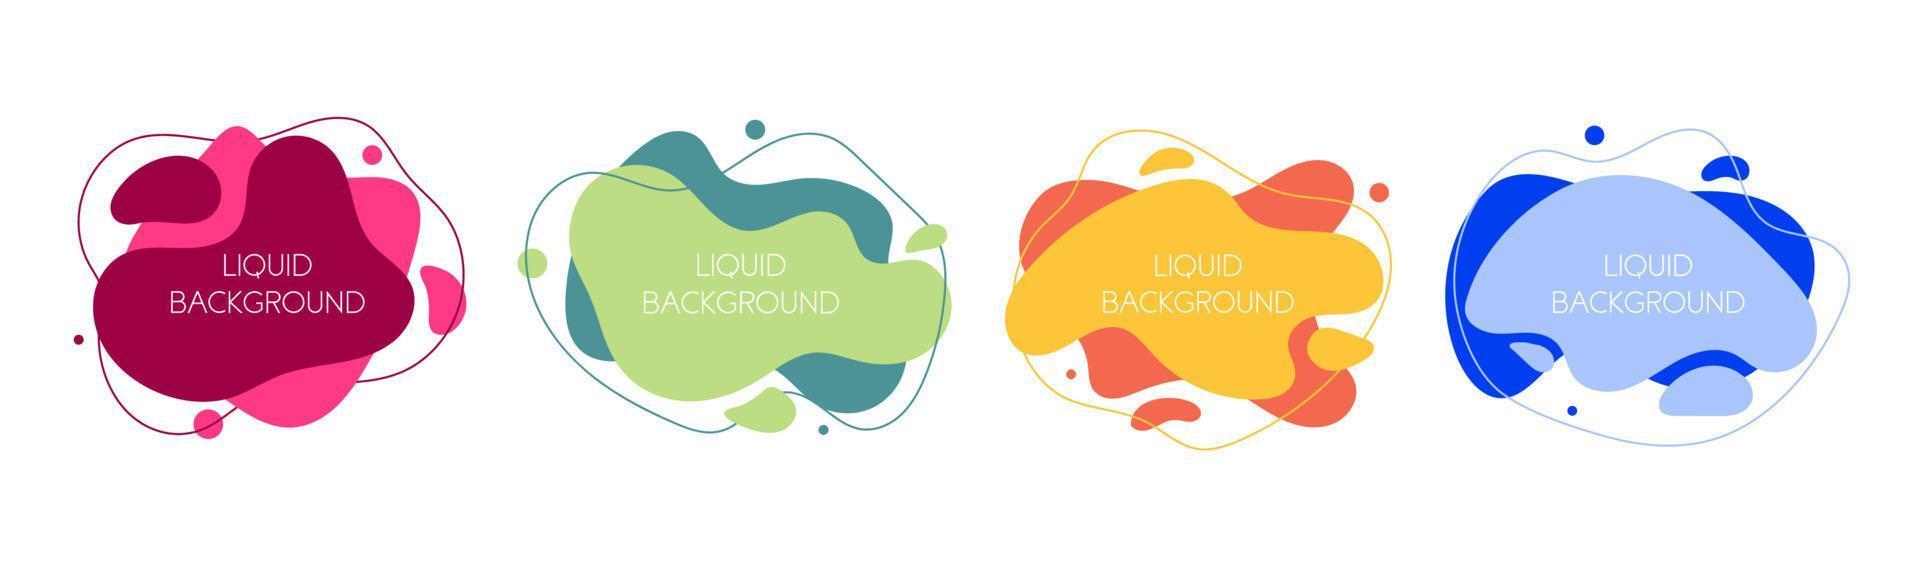 conjunto de 4 elementos líquidos gráficos modernos abstractos. ondas dinámicas formas de fluidos de diferentes colores. pancartas aisladas con formas líquidas que fluyen. plantilla para el diseño de un logo, volante o presentación. vector